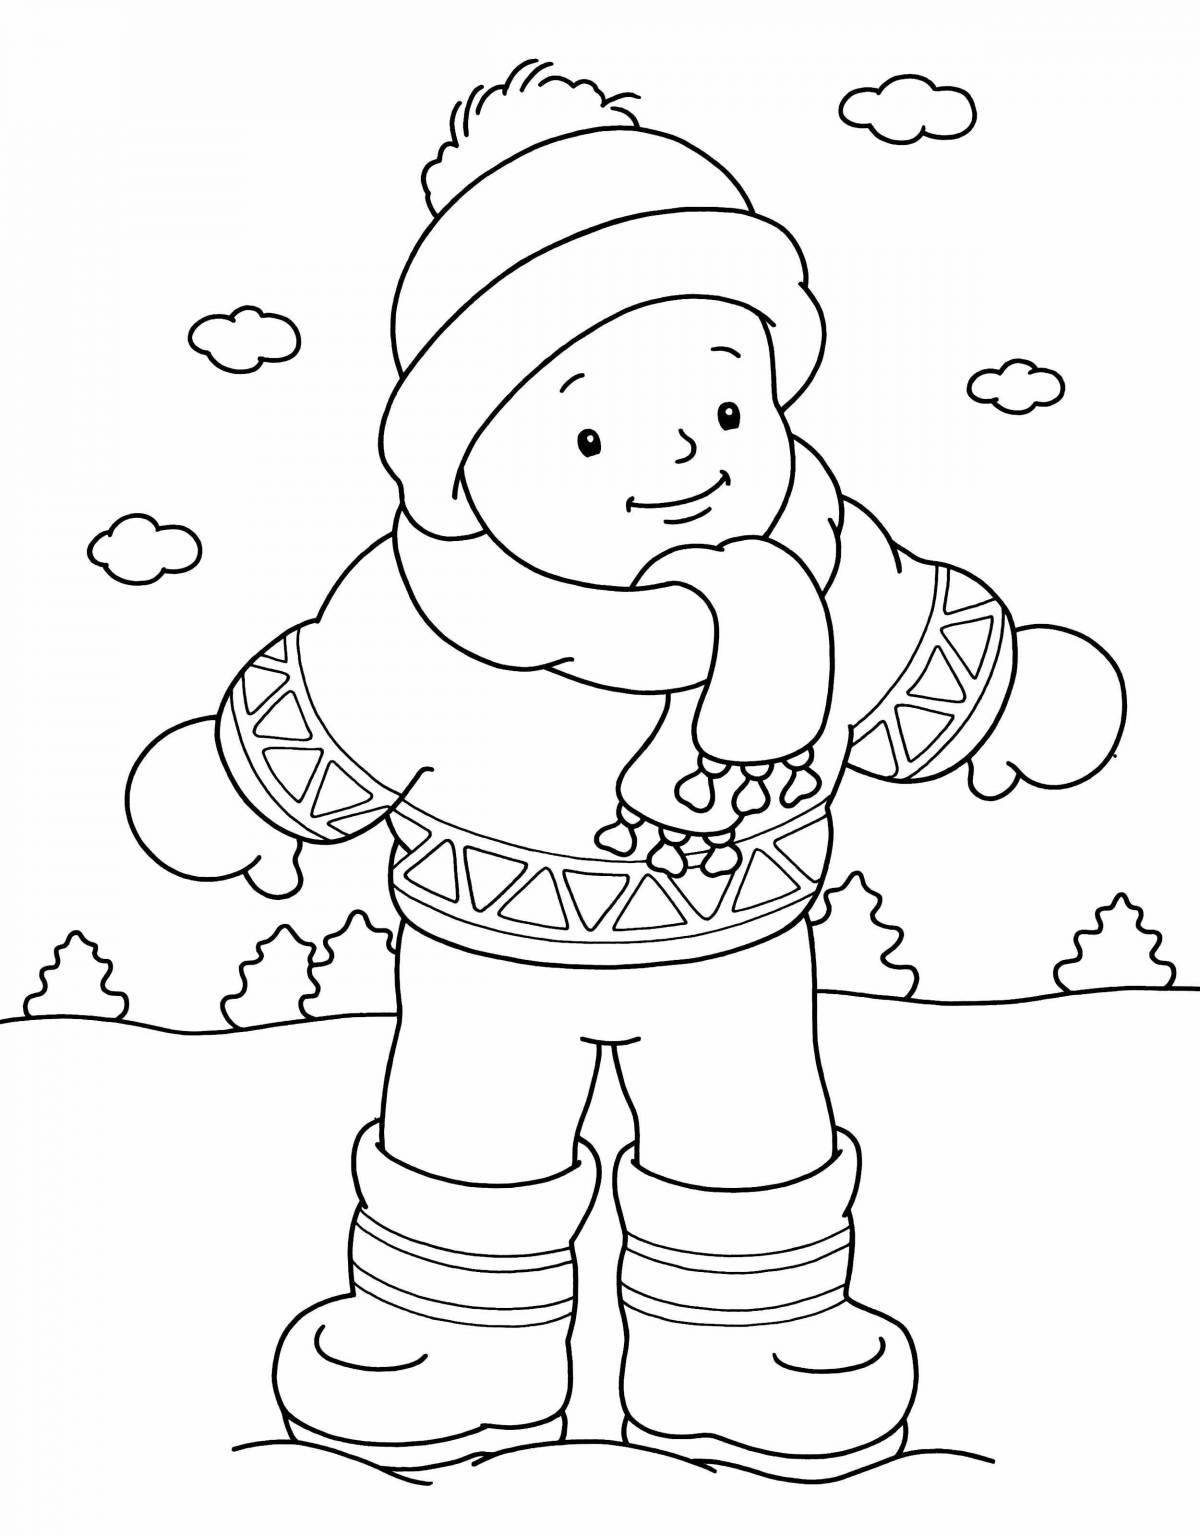 Раскраска snuggled boy в зимней одежде